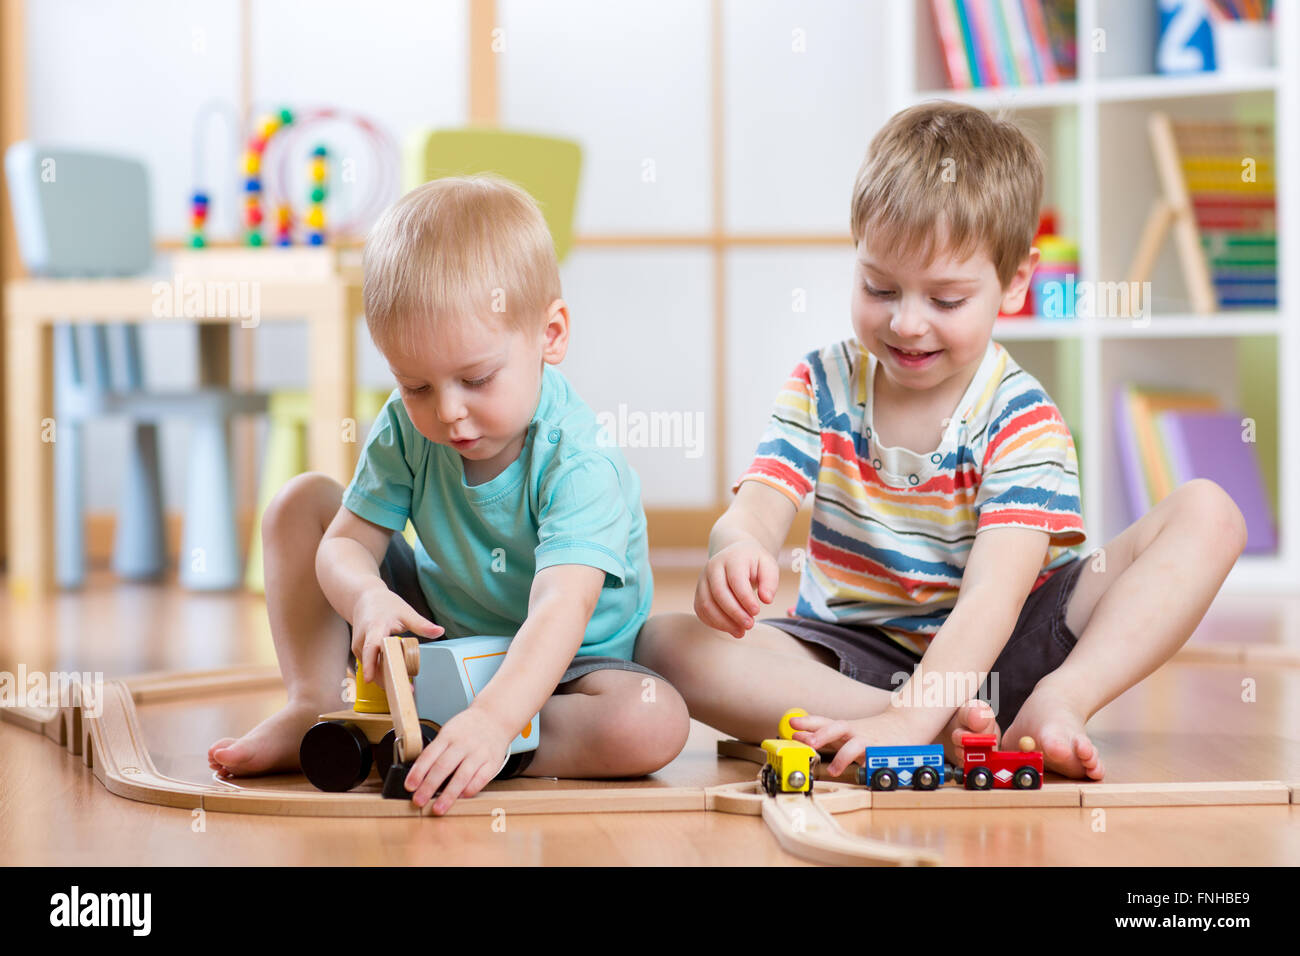 Deux petits garçons enfants jouant dans les jeu de rôle Banque D'Images